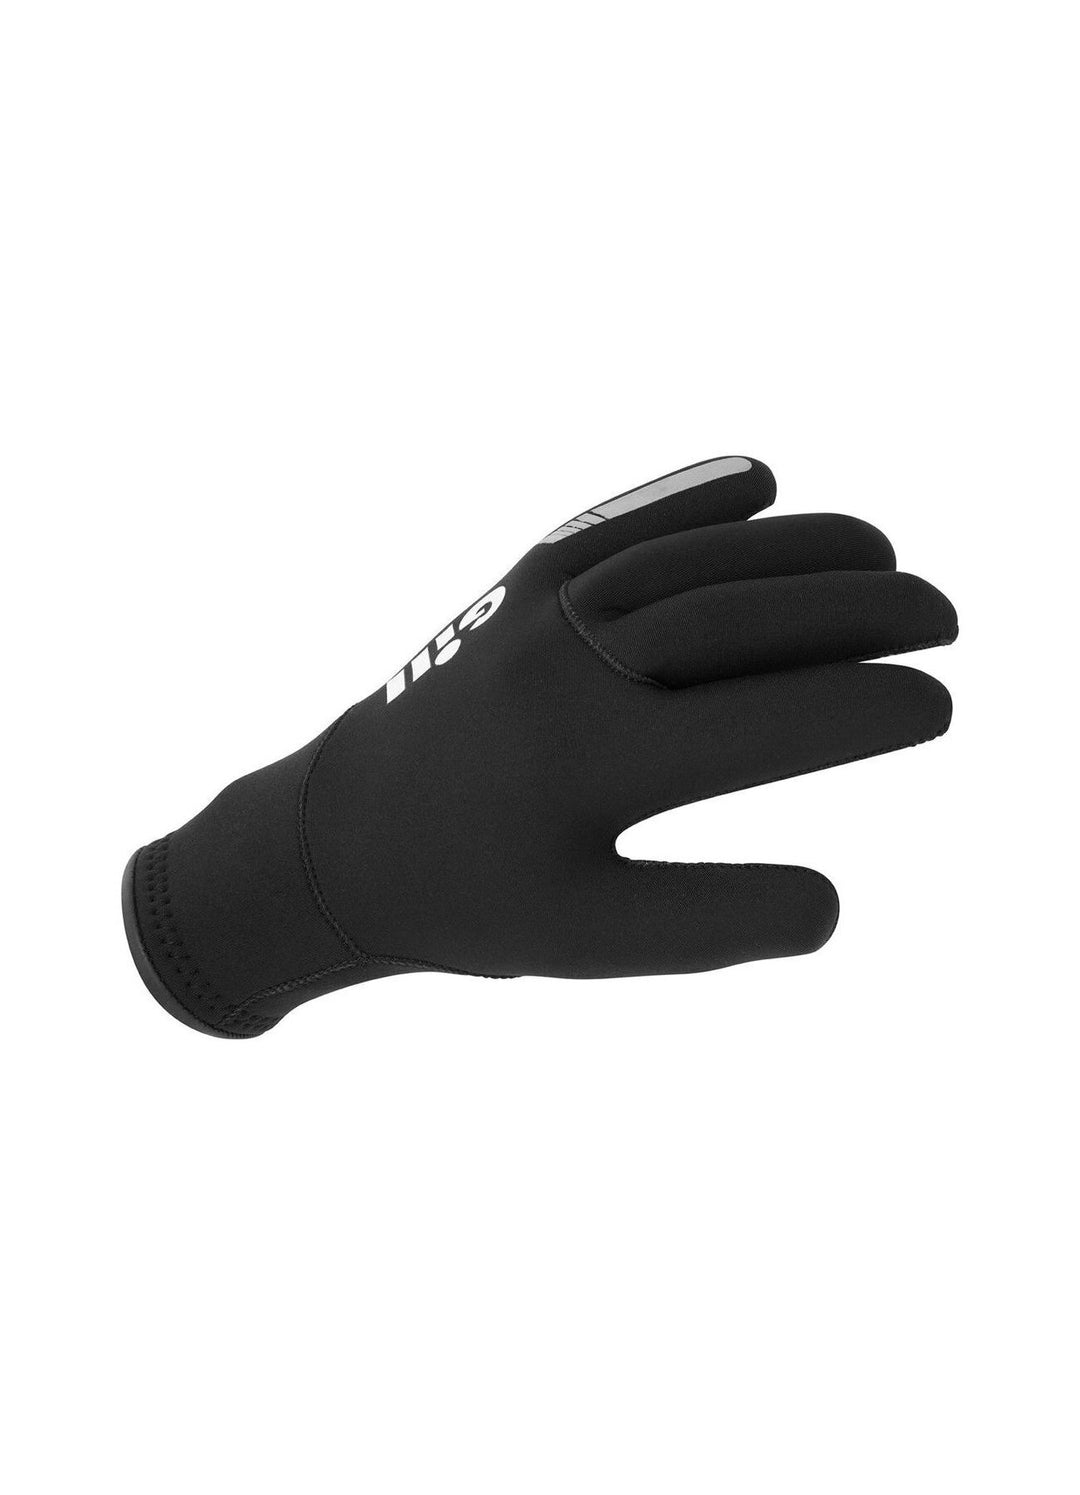 Gill Neoprene Gloves - Black